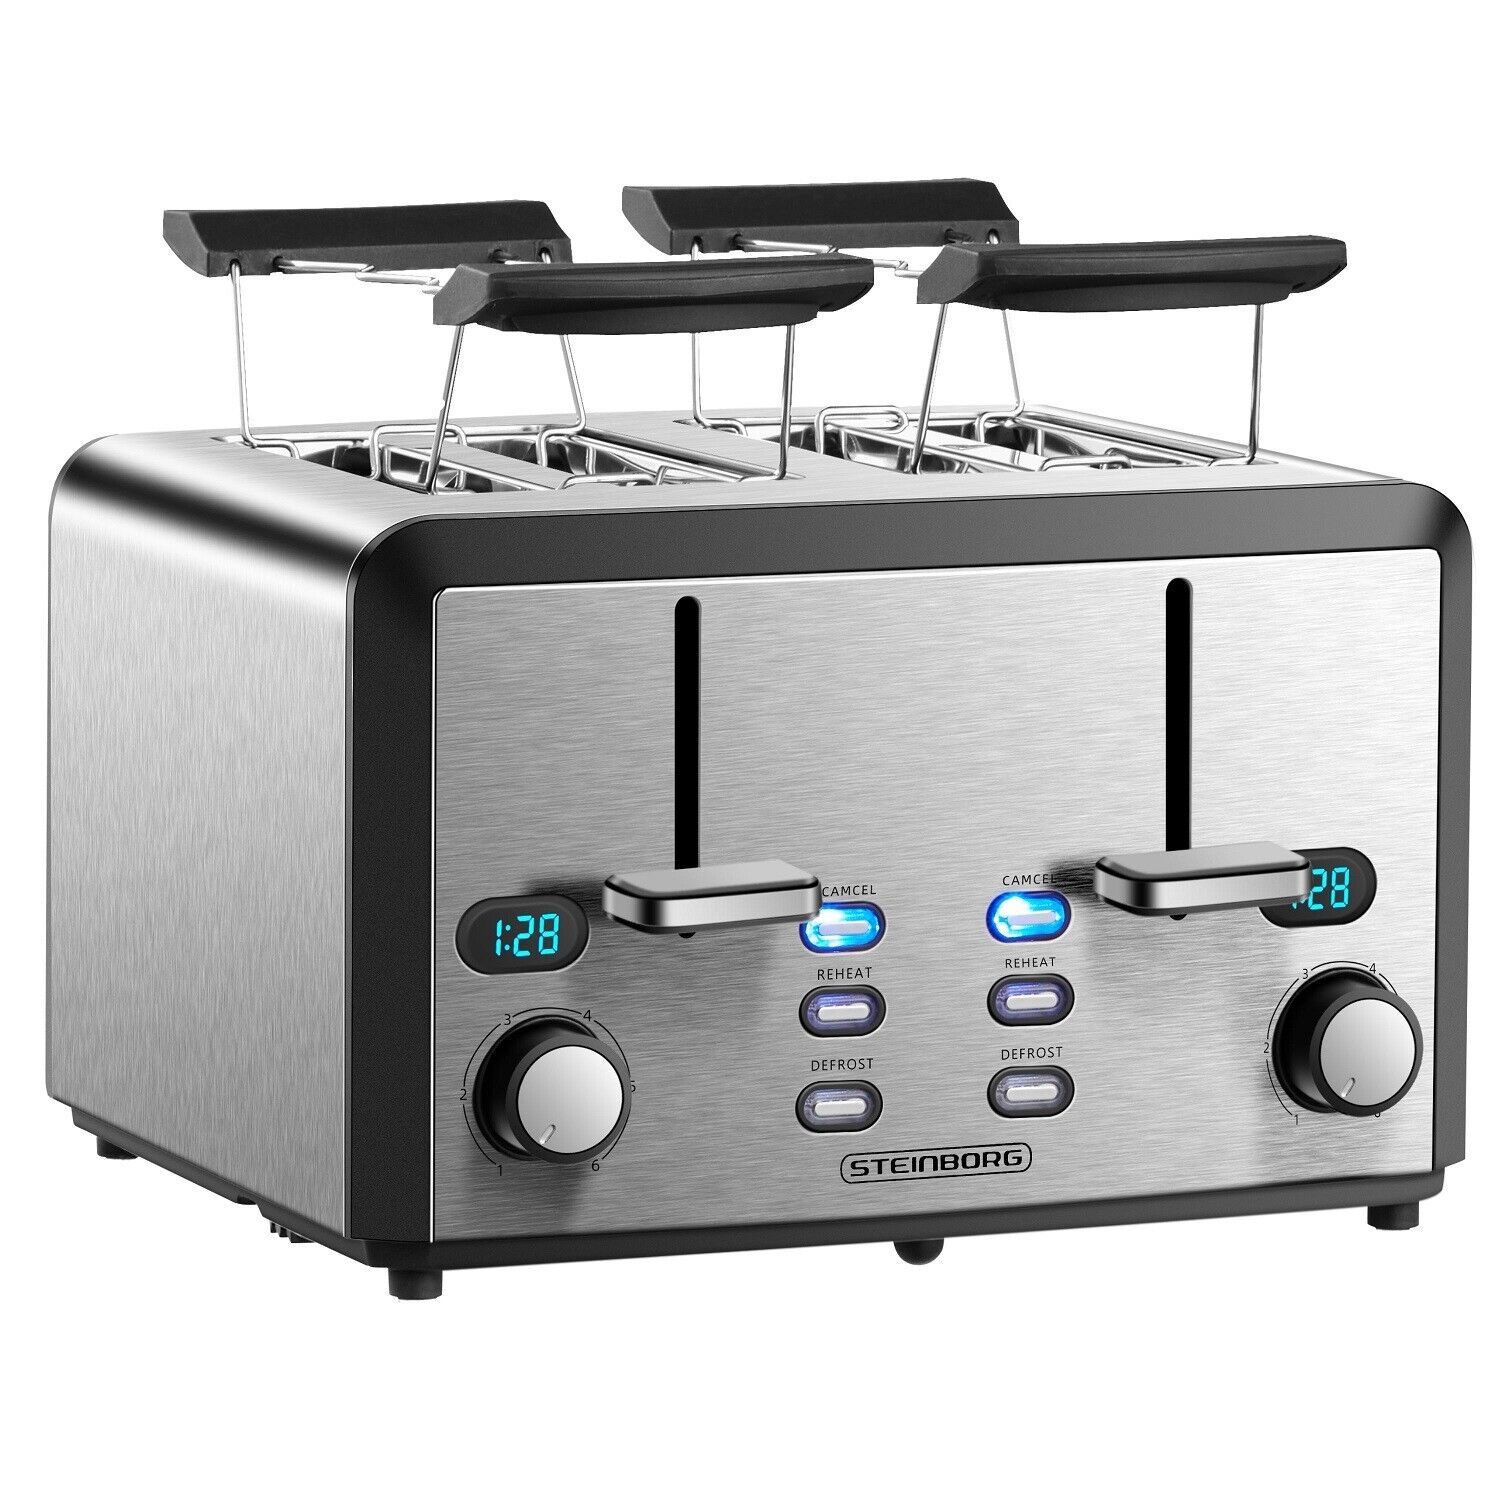 XXL Edelstahl Toaster 4 Scheiben Toaster mit Brötchenaufsatz 2x Krümelschublade